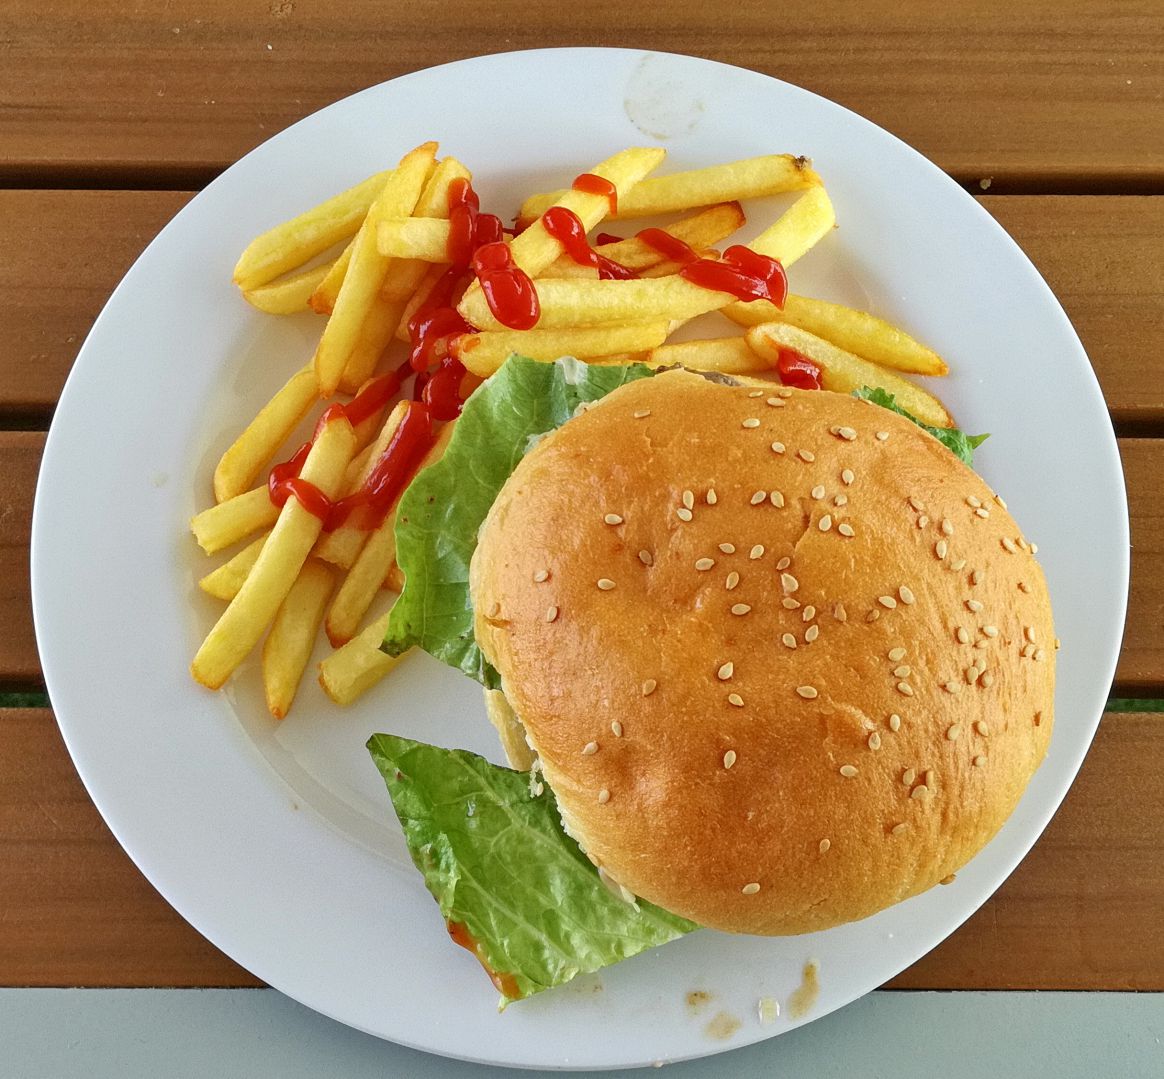 4. SEETAG - mittags gönnen wir uns einen Klassik-Burger am Cliff24-Grill auf dem Pooldeck